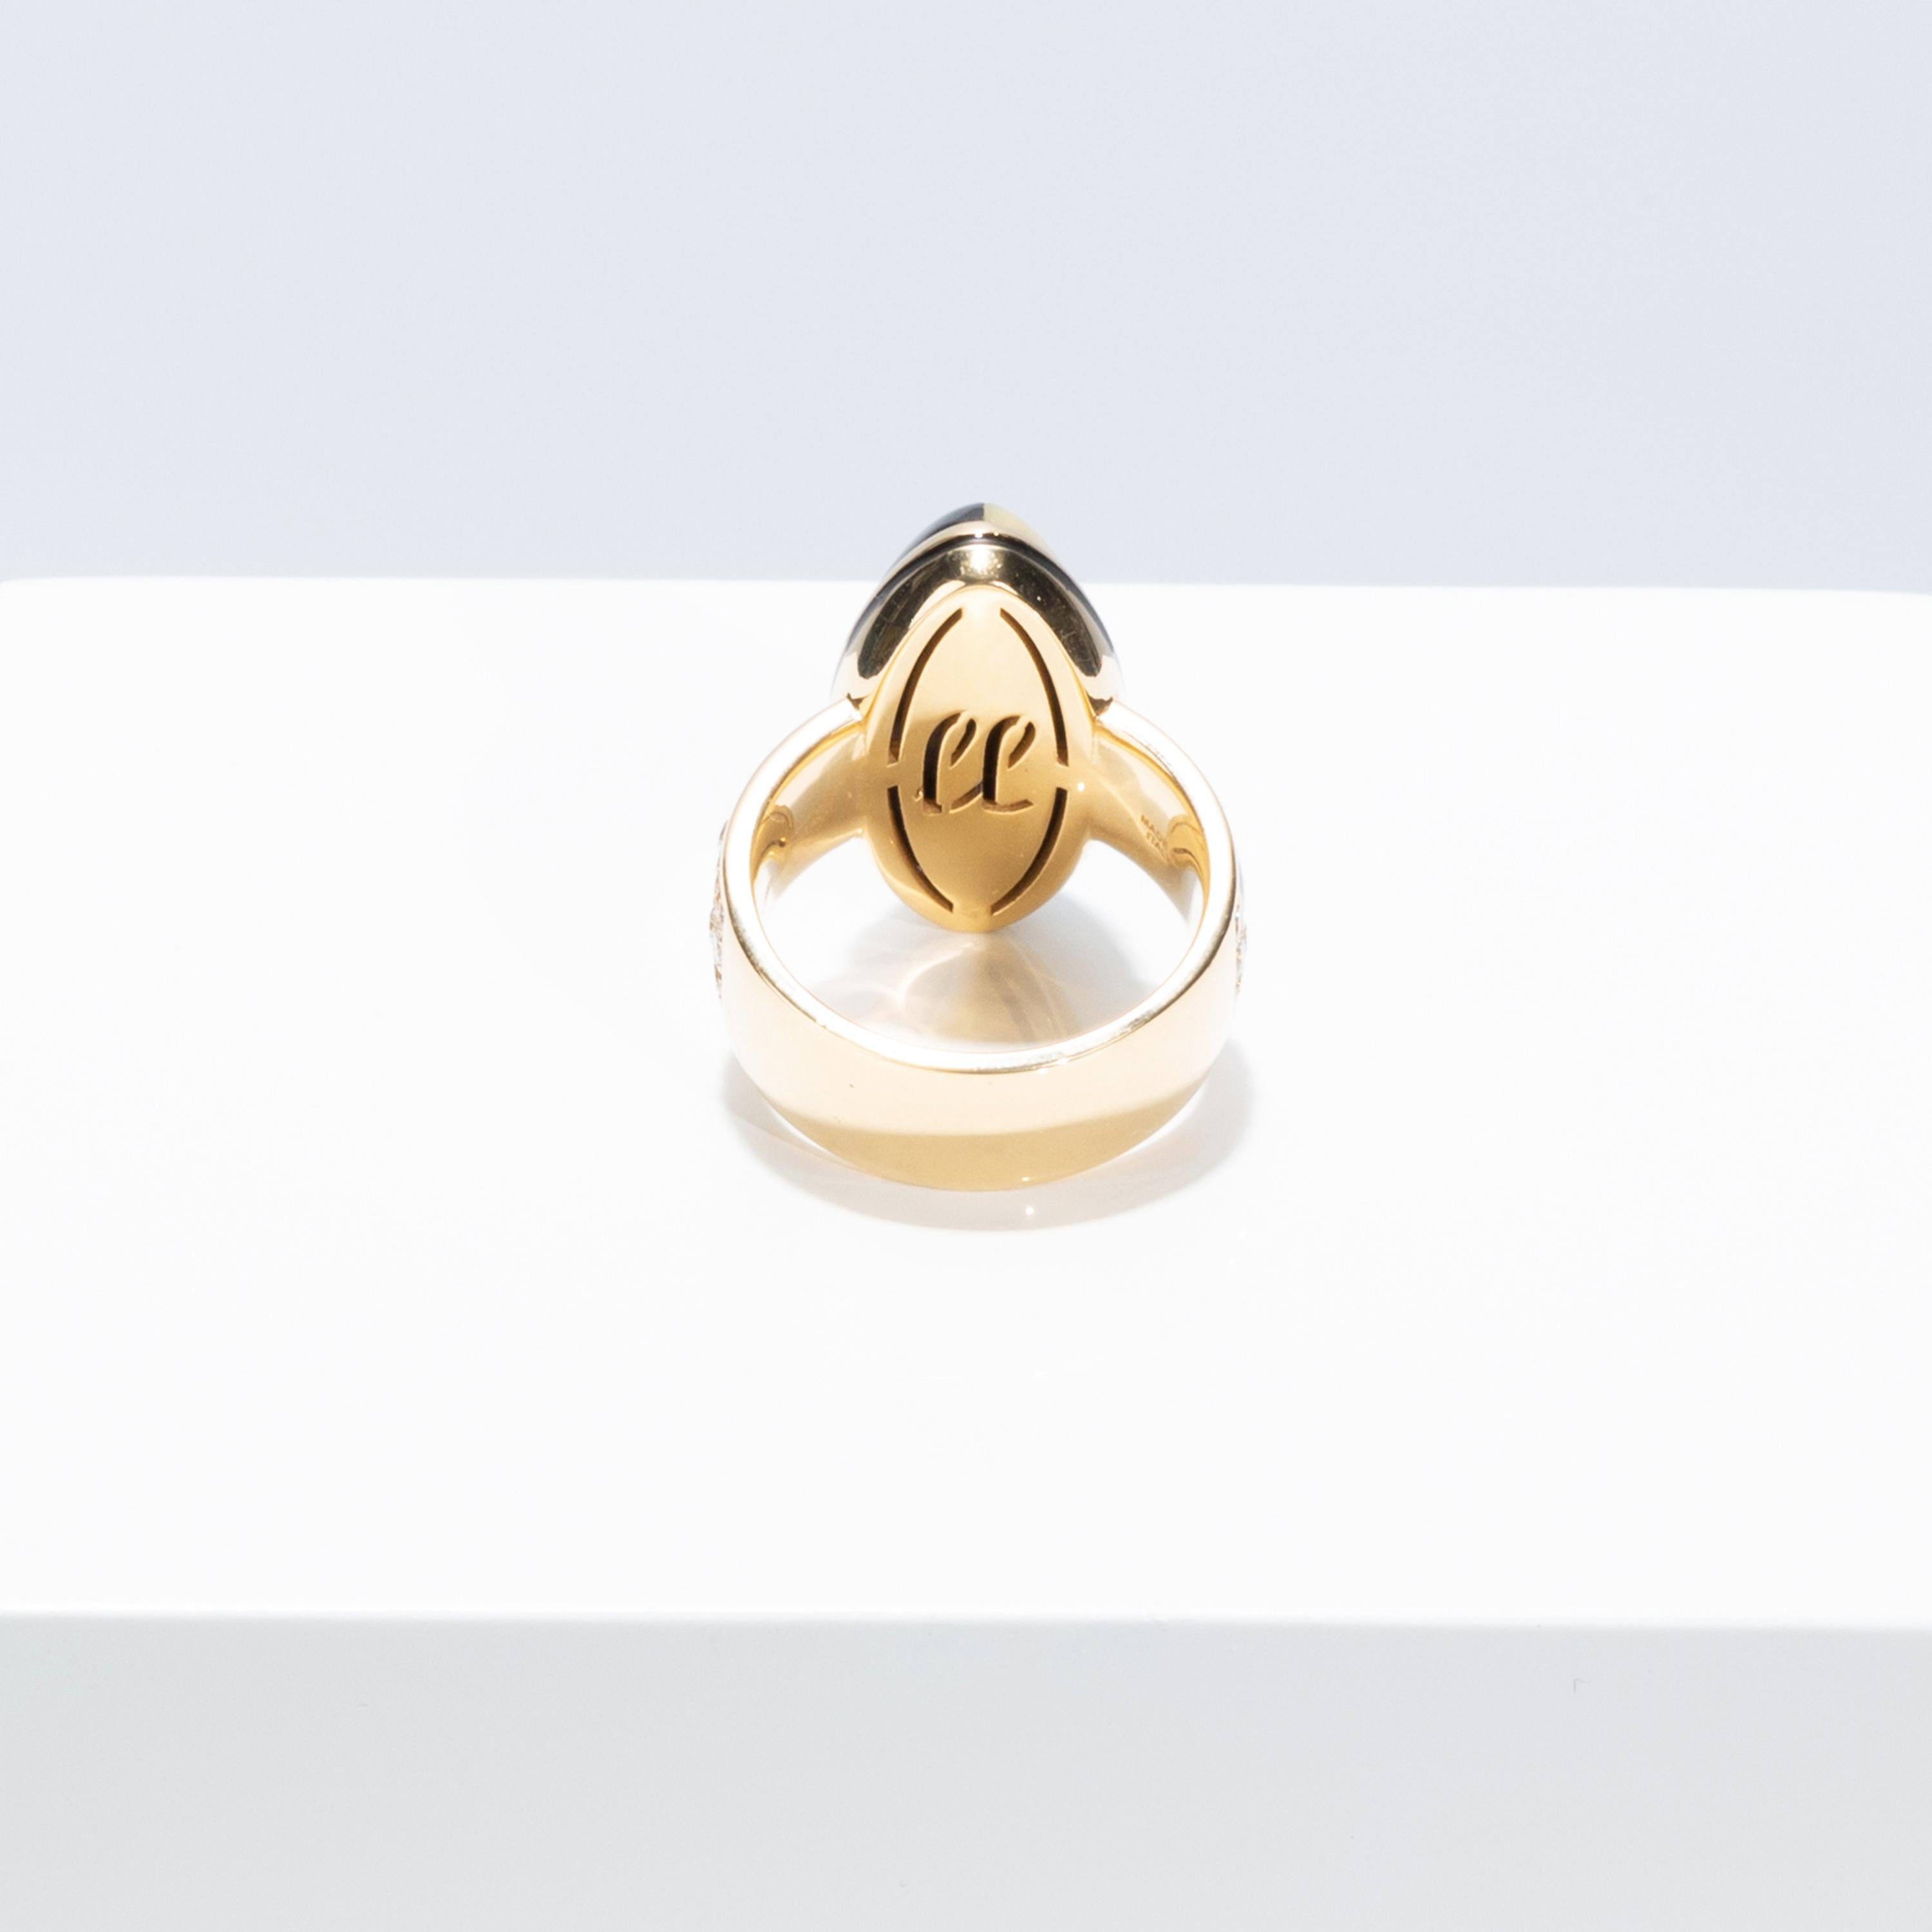 Cabochon Francesca Villa's 18k Gold Diamond Art Deco Style Black and Cream Square Ring For Sale